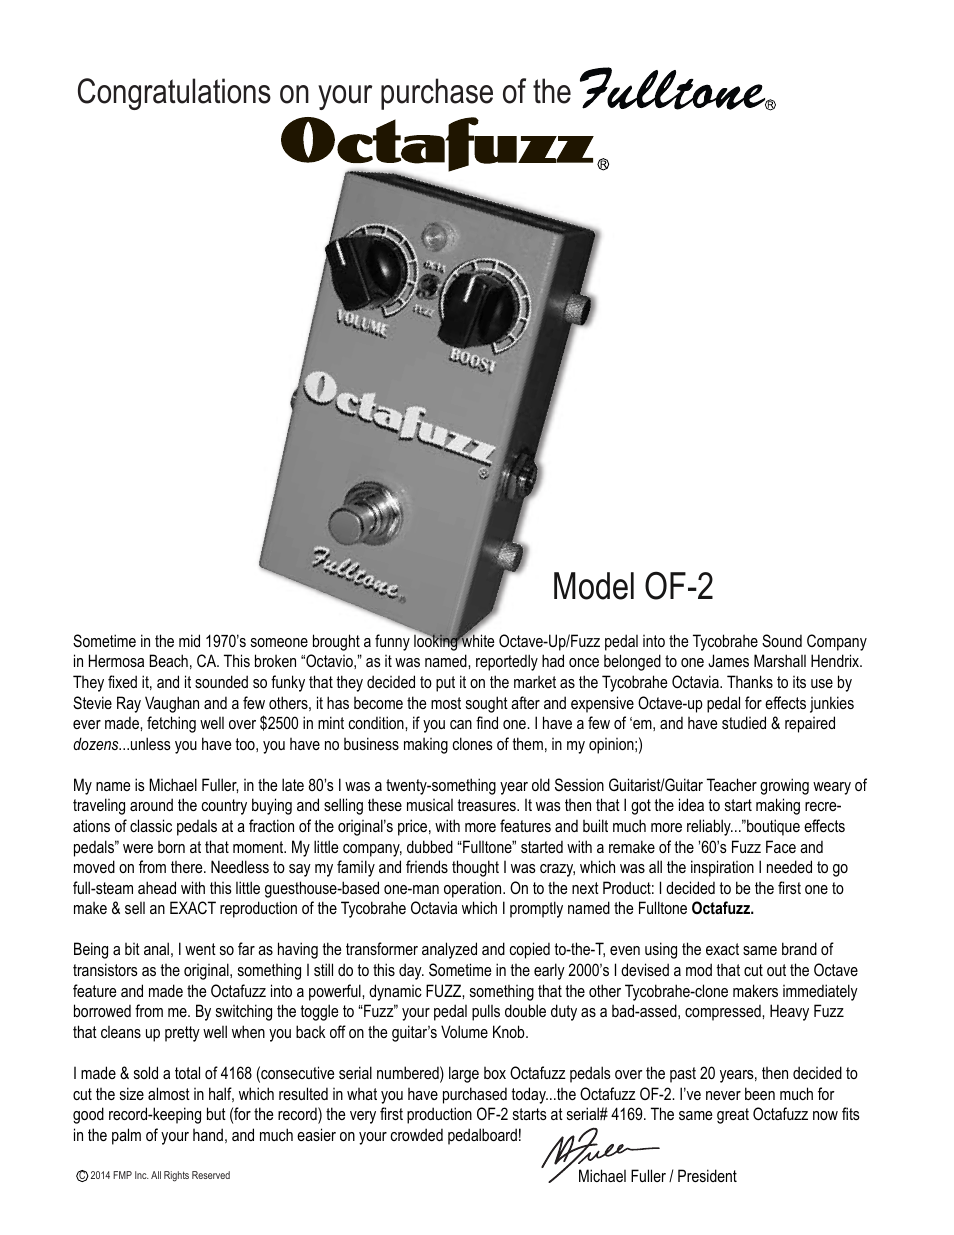 Octafuzz OF-2